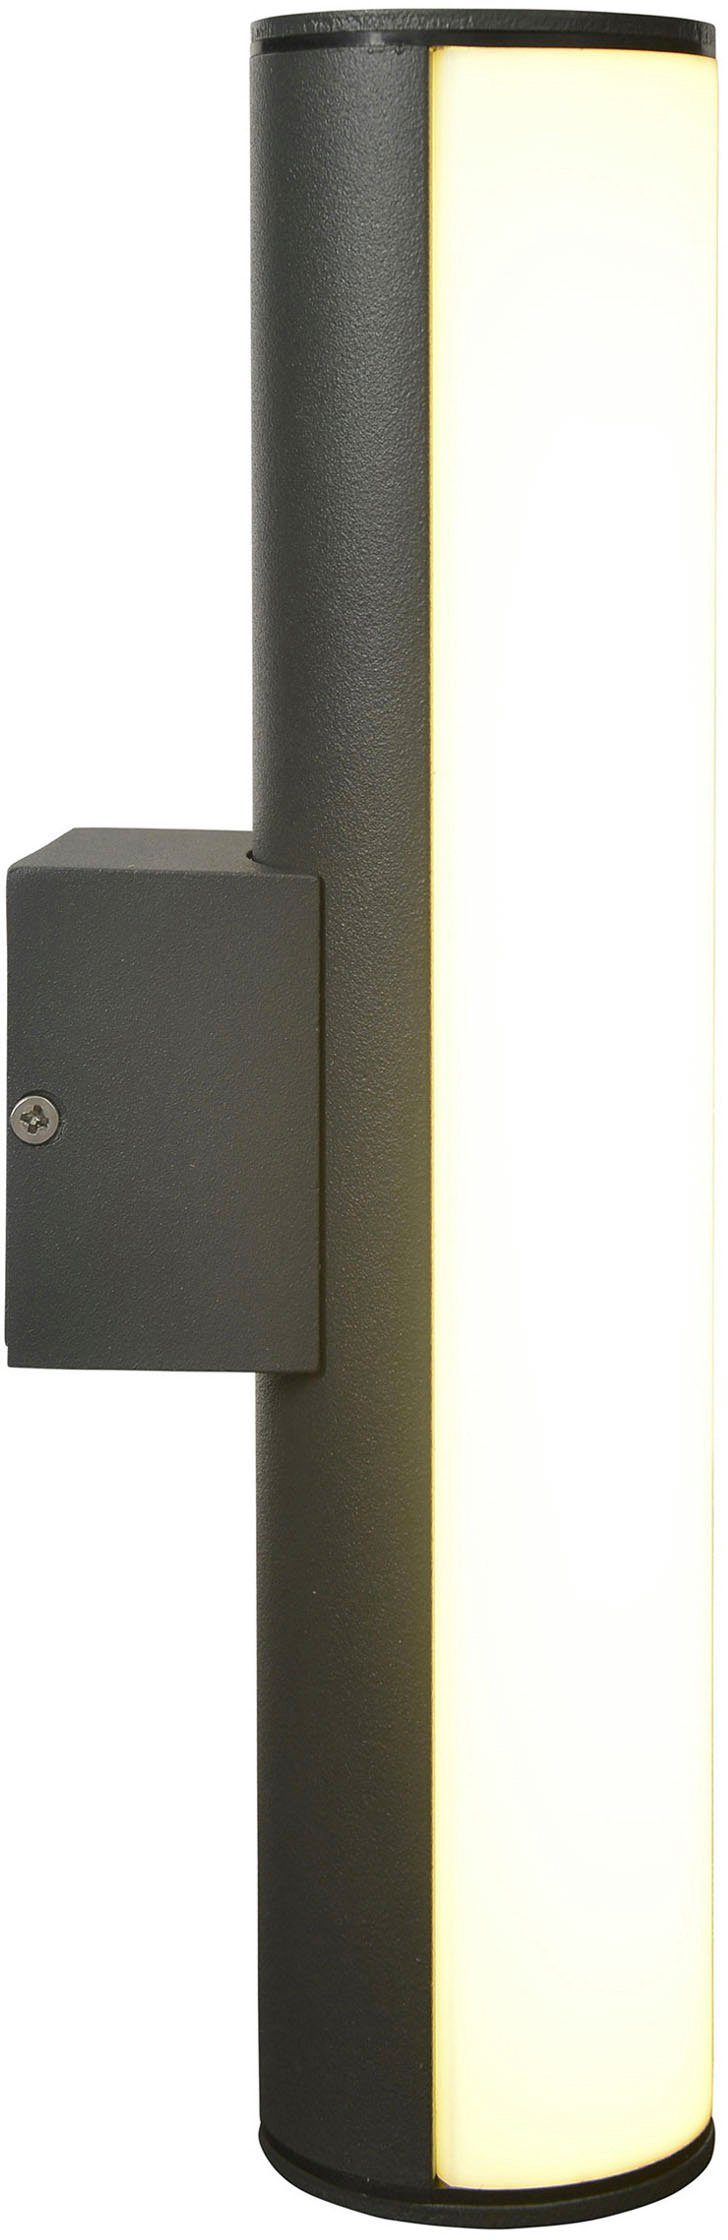 näve LED Außen-Wandleuchte Warmweiß, dunkelgrau IP54 Länge 30cm warmweißes Licht Aluminium Flair